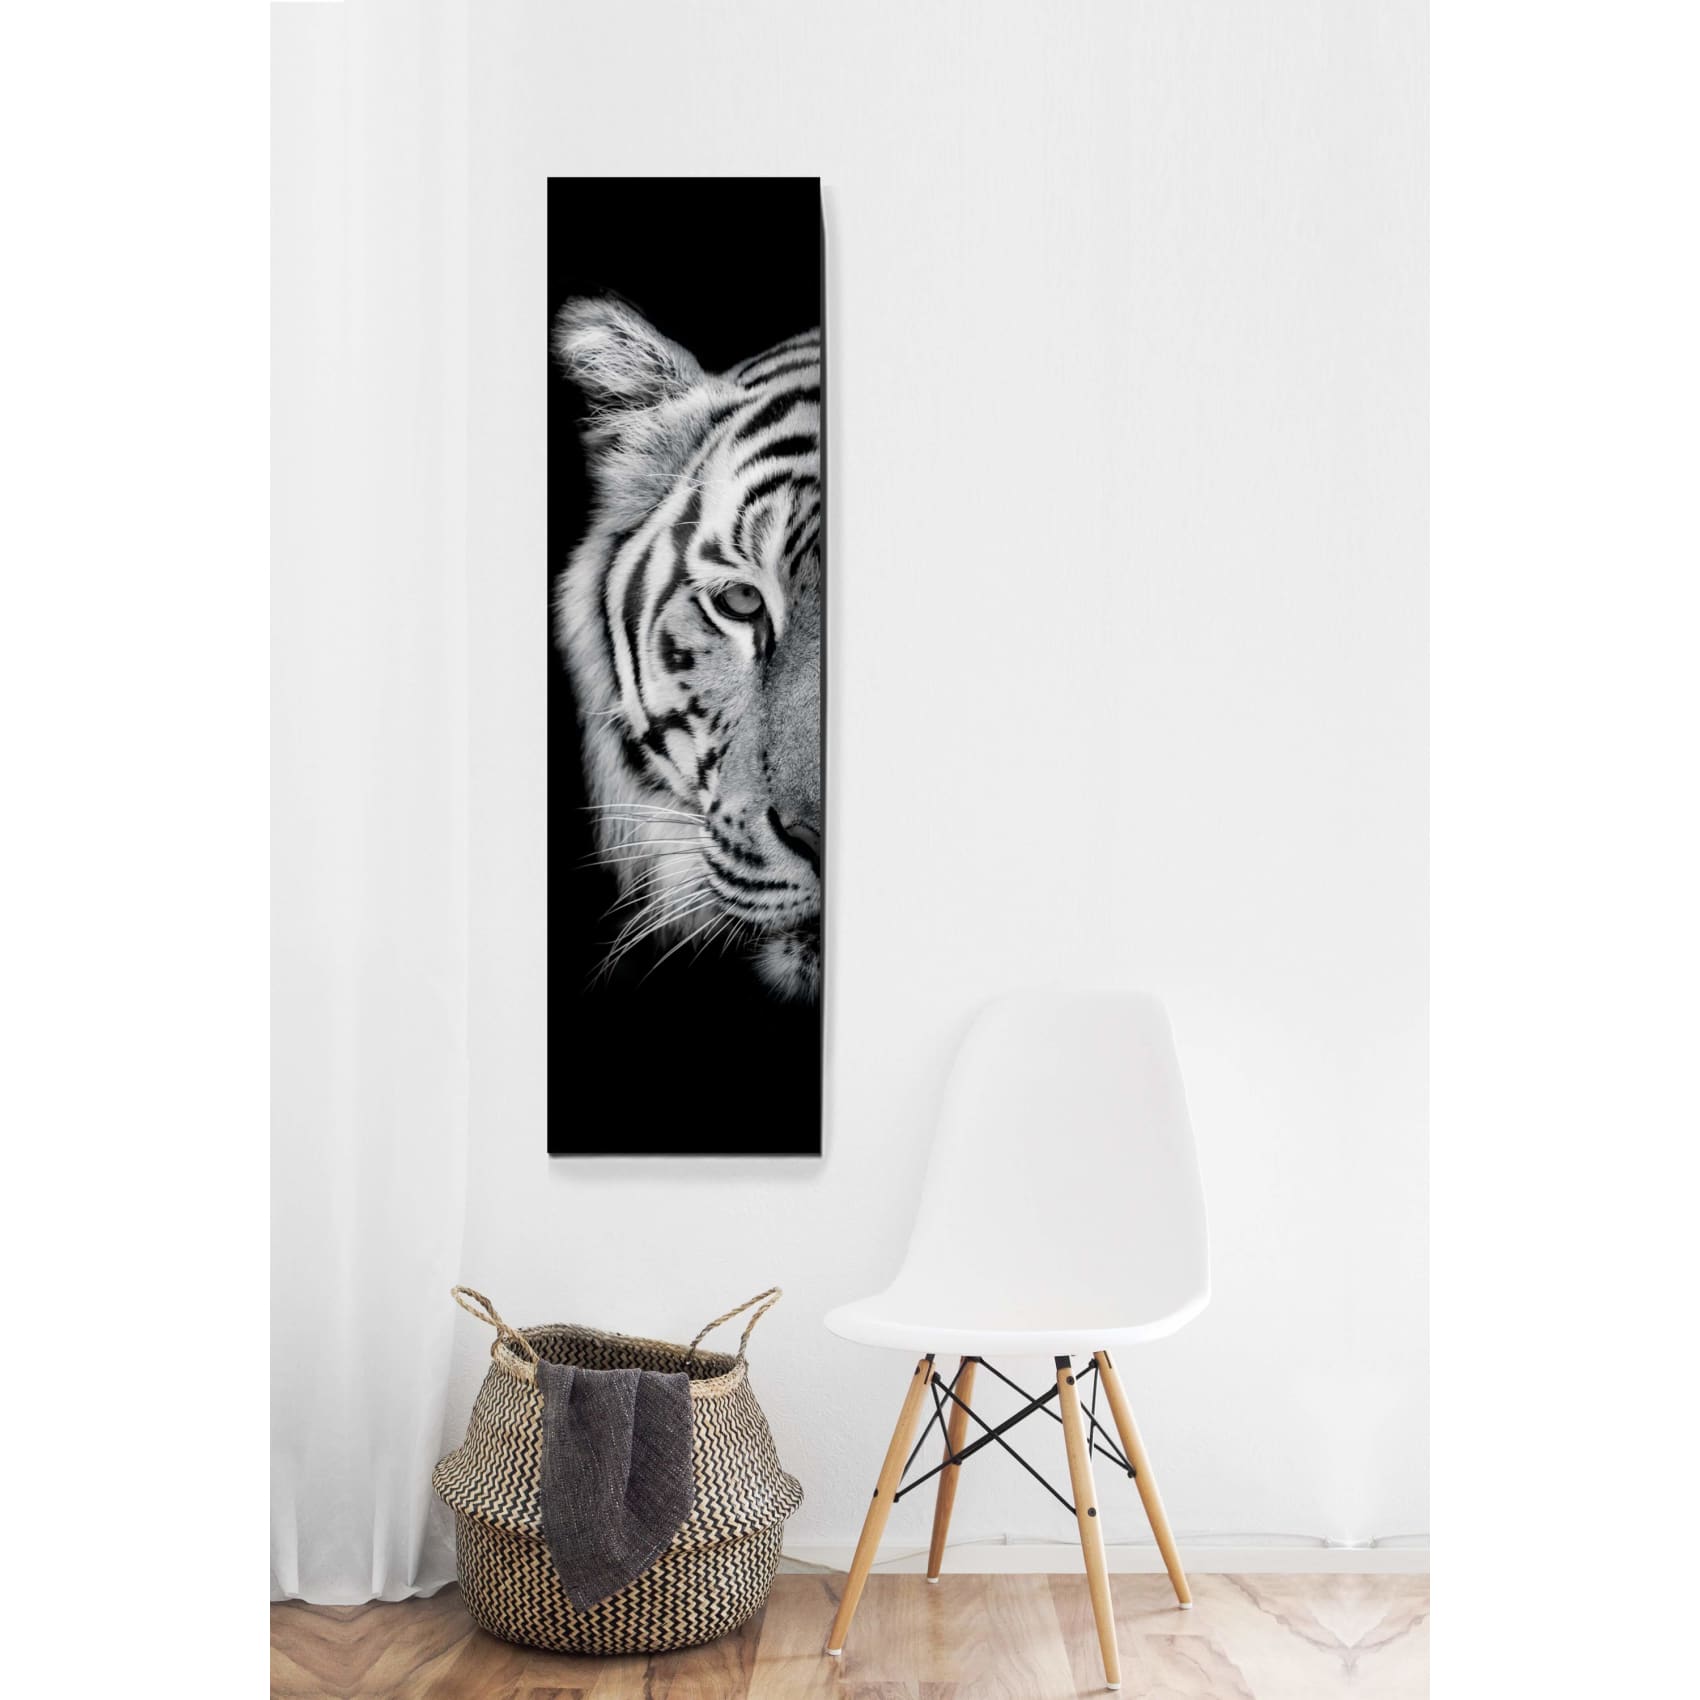 Cuadro decorativo, sala, habitación, animal, tigre